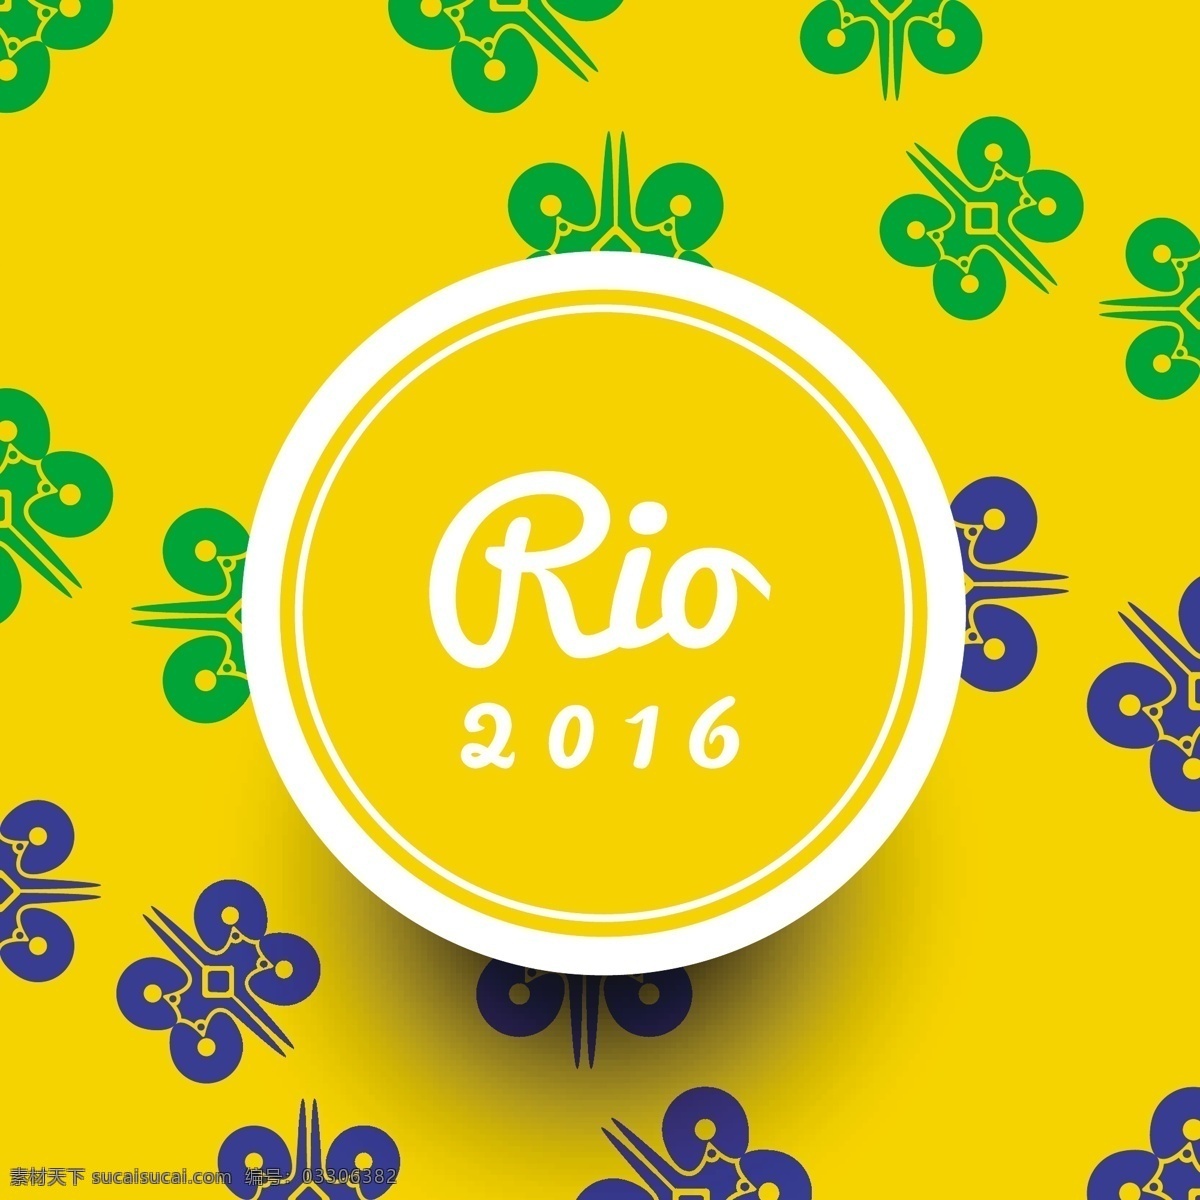 巴西 黄色 现代 简约 背景 背景摘要 夏季运动 壁纸优雅 七彩2016 健康 奥运会 2016rio